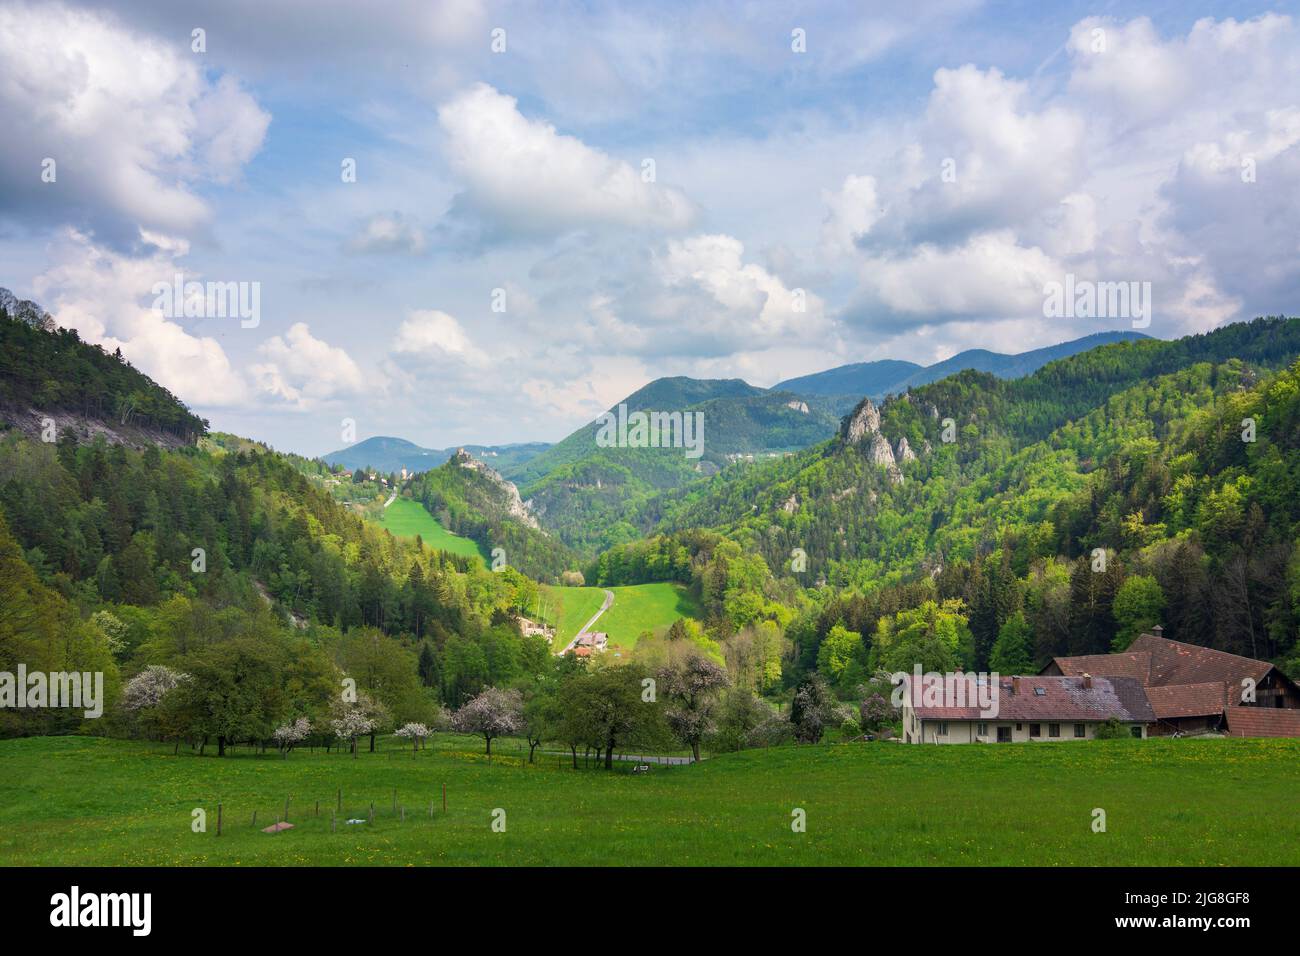 Village Breitenstein, Klamm Castle, valley Adlitzgraben in the Vienna Alps, Lower Austria, Austria Stock Photo